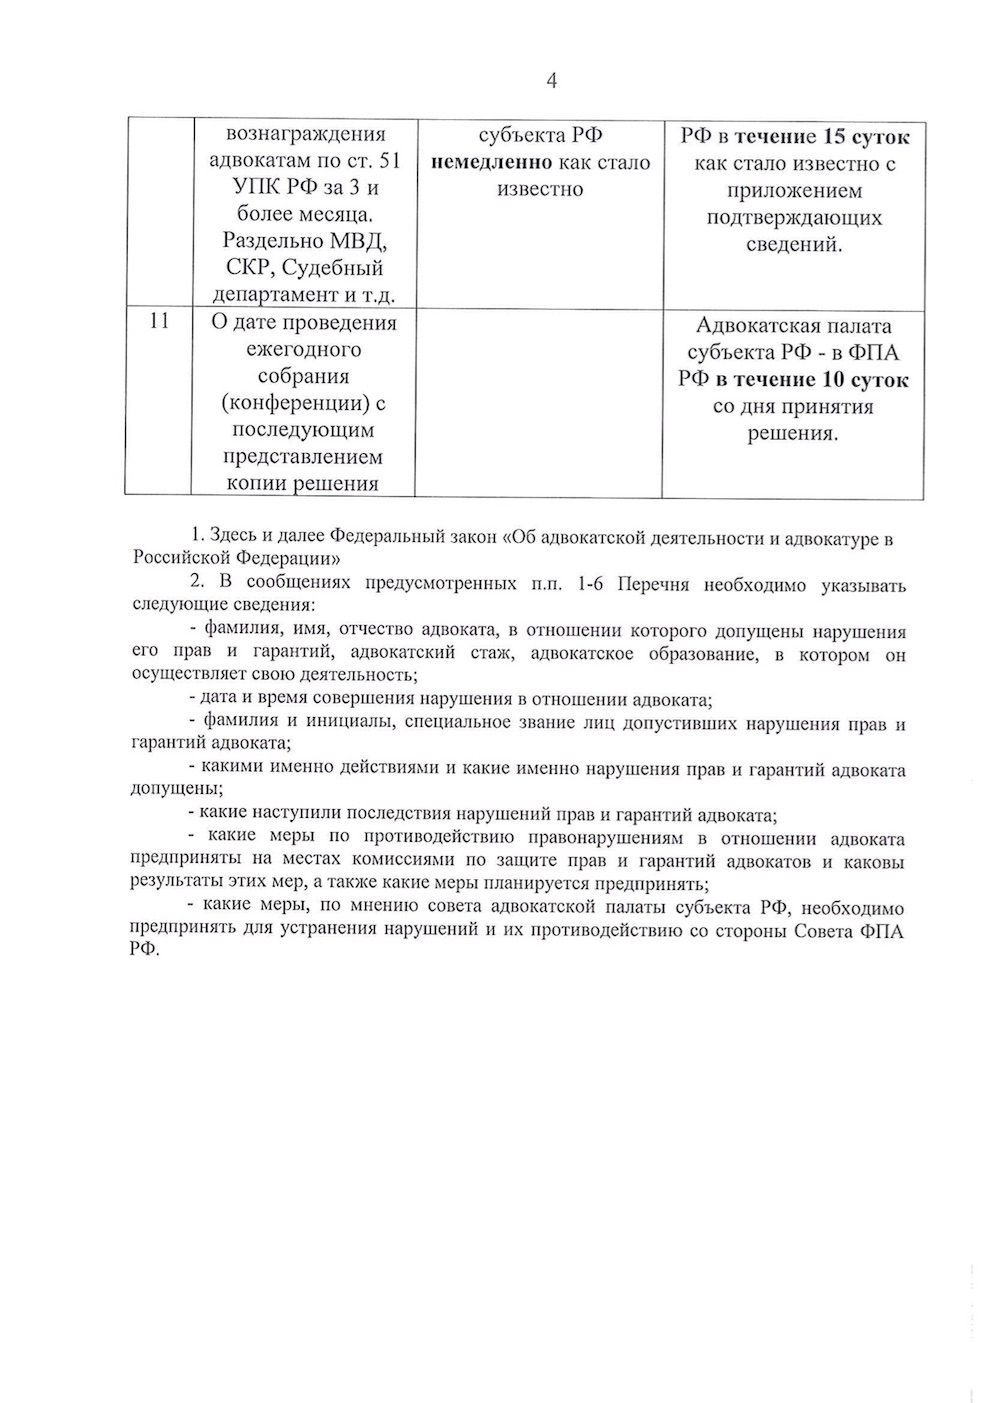 Советом ФПА утвержден перечень сведений, подлежащих представлению в Адвокатскую Палату субъекта РФ и ФПА РФ